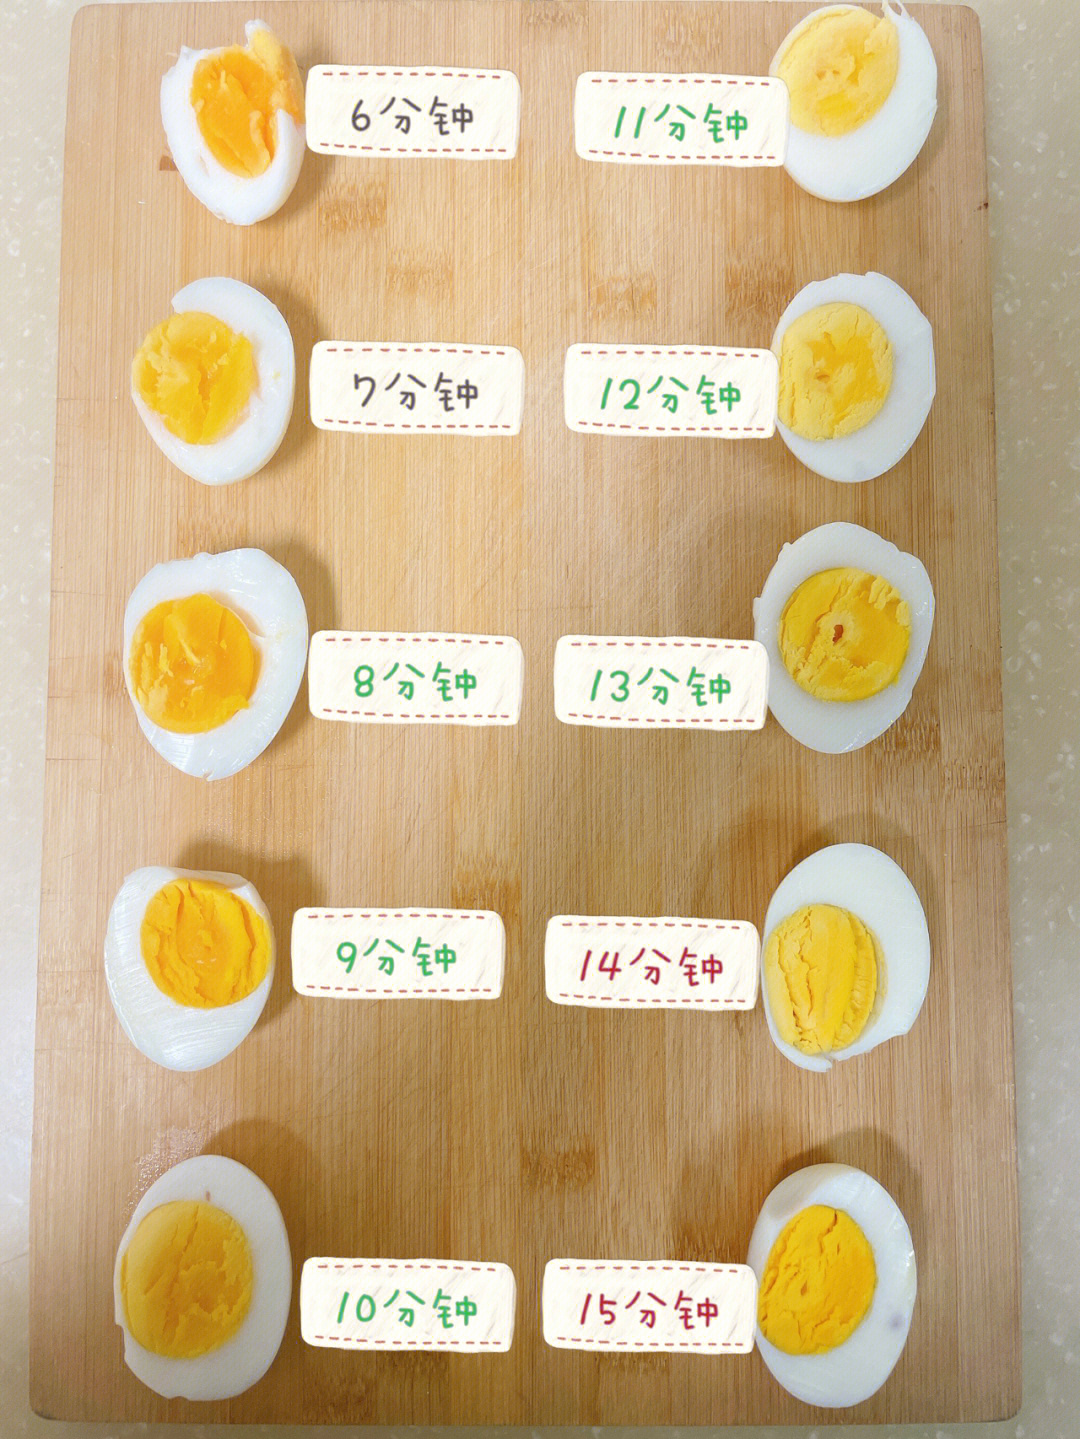 如何煮出一枚喜欢的鸡蛋?煮制时间如图一,其他时间不变小贴士971